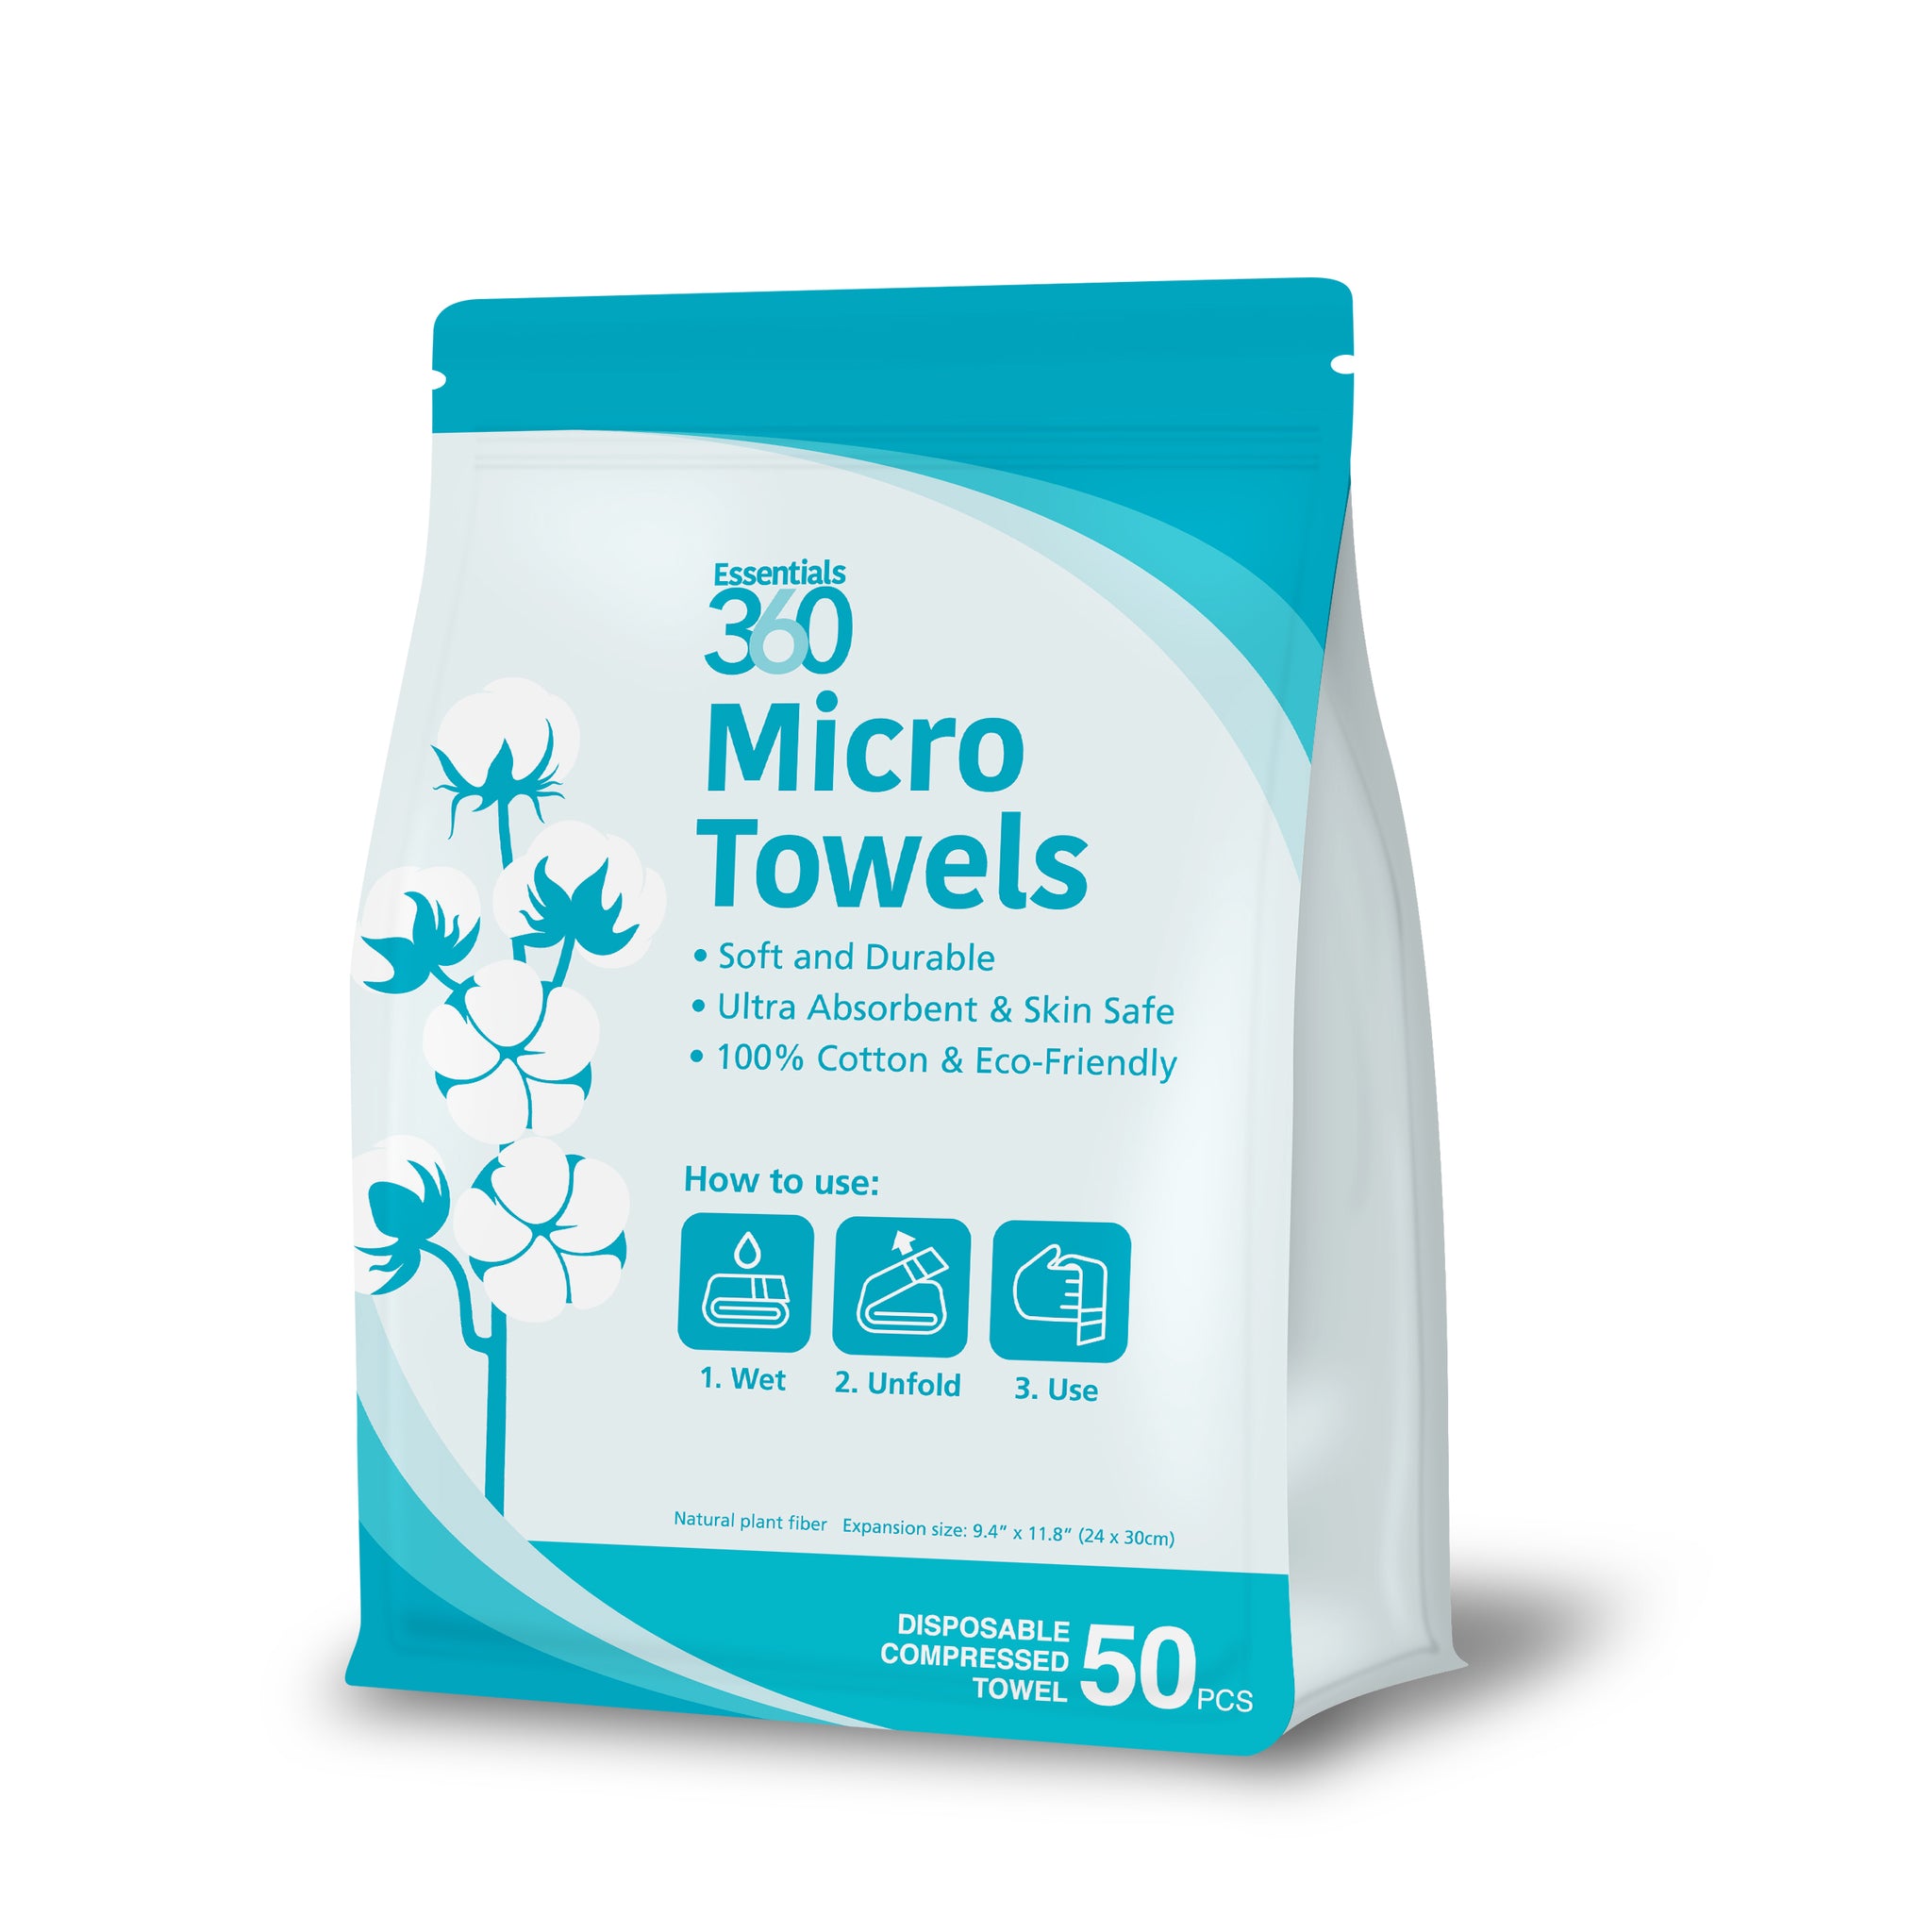 Essentials 360 Micro Towels